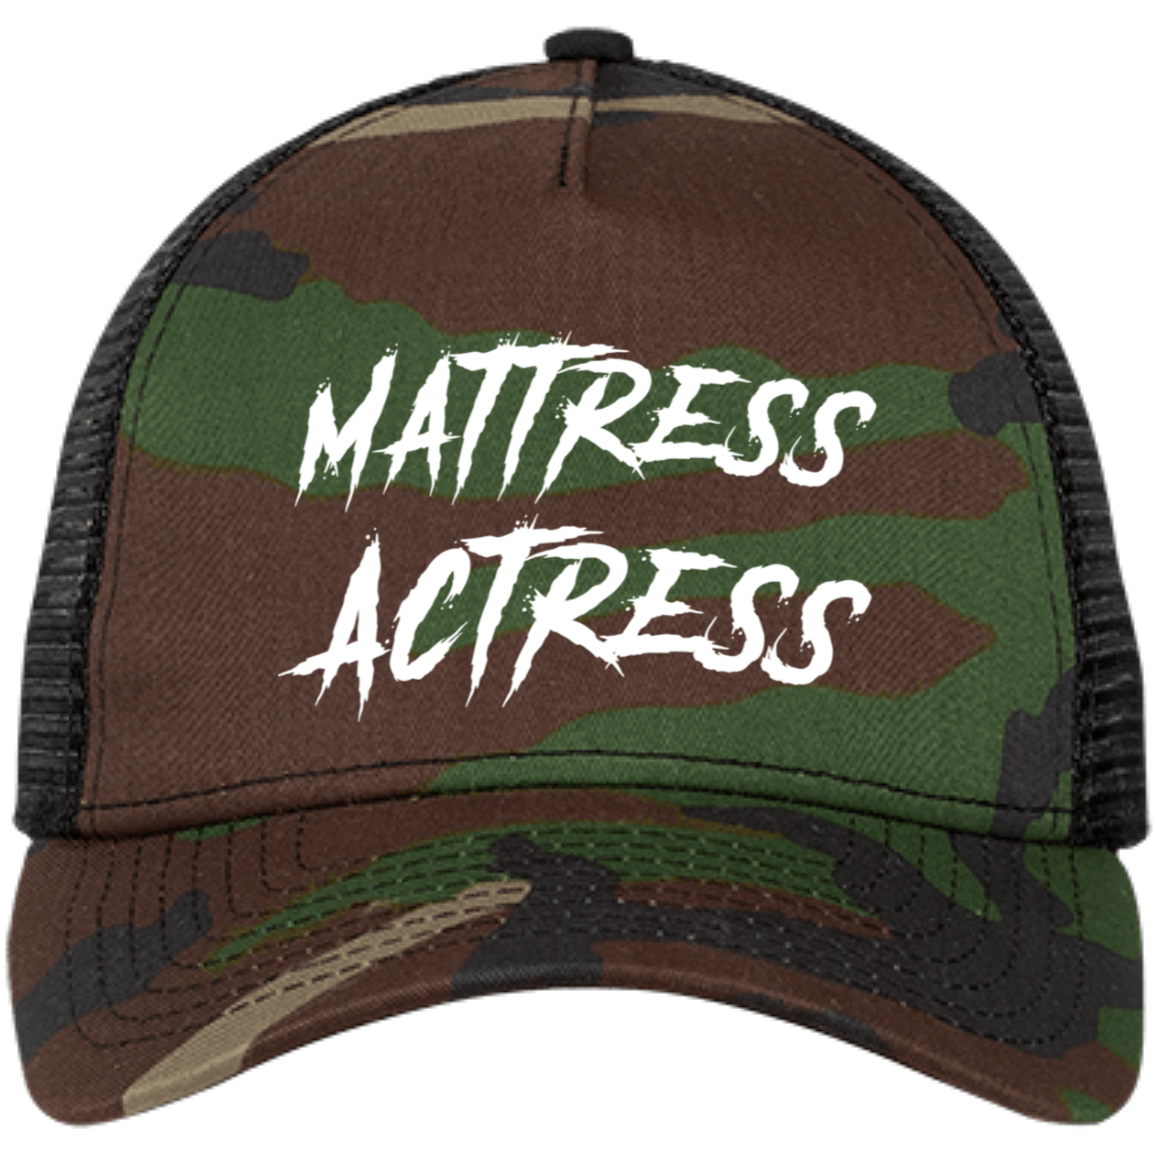 "Mattress Actress" Embroidered Snapback Trucker Cap